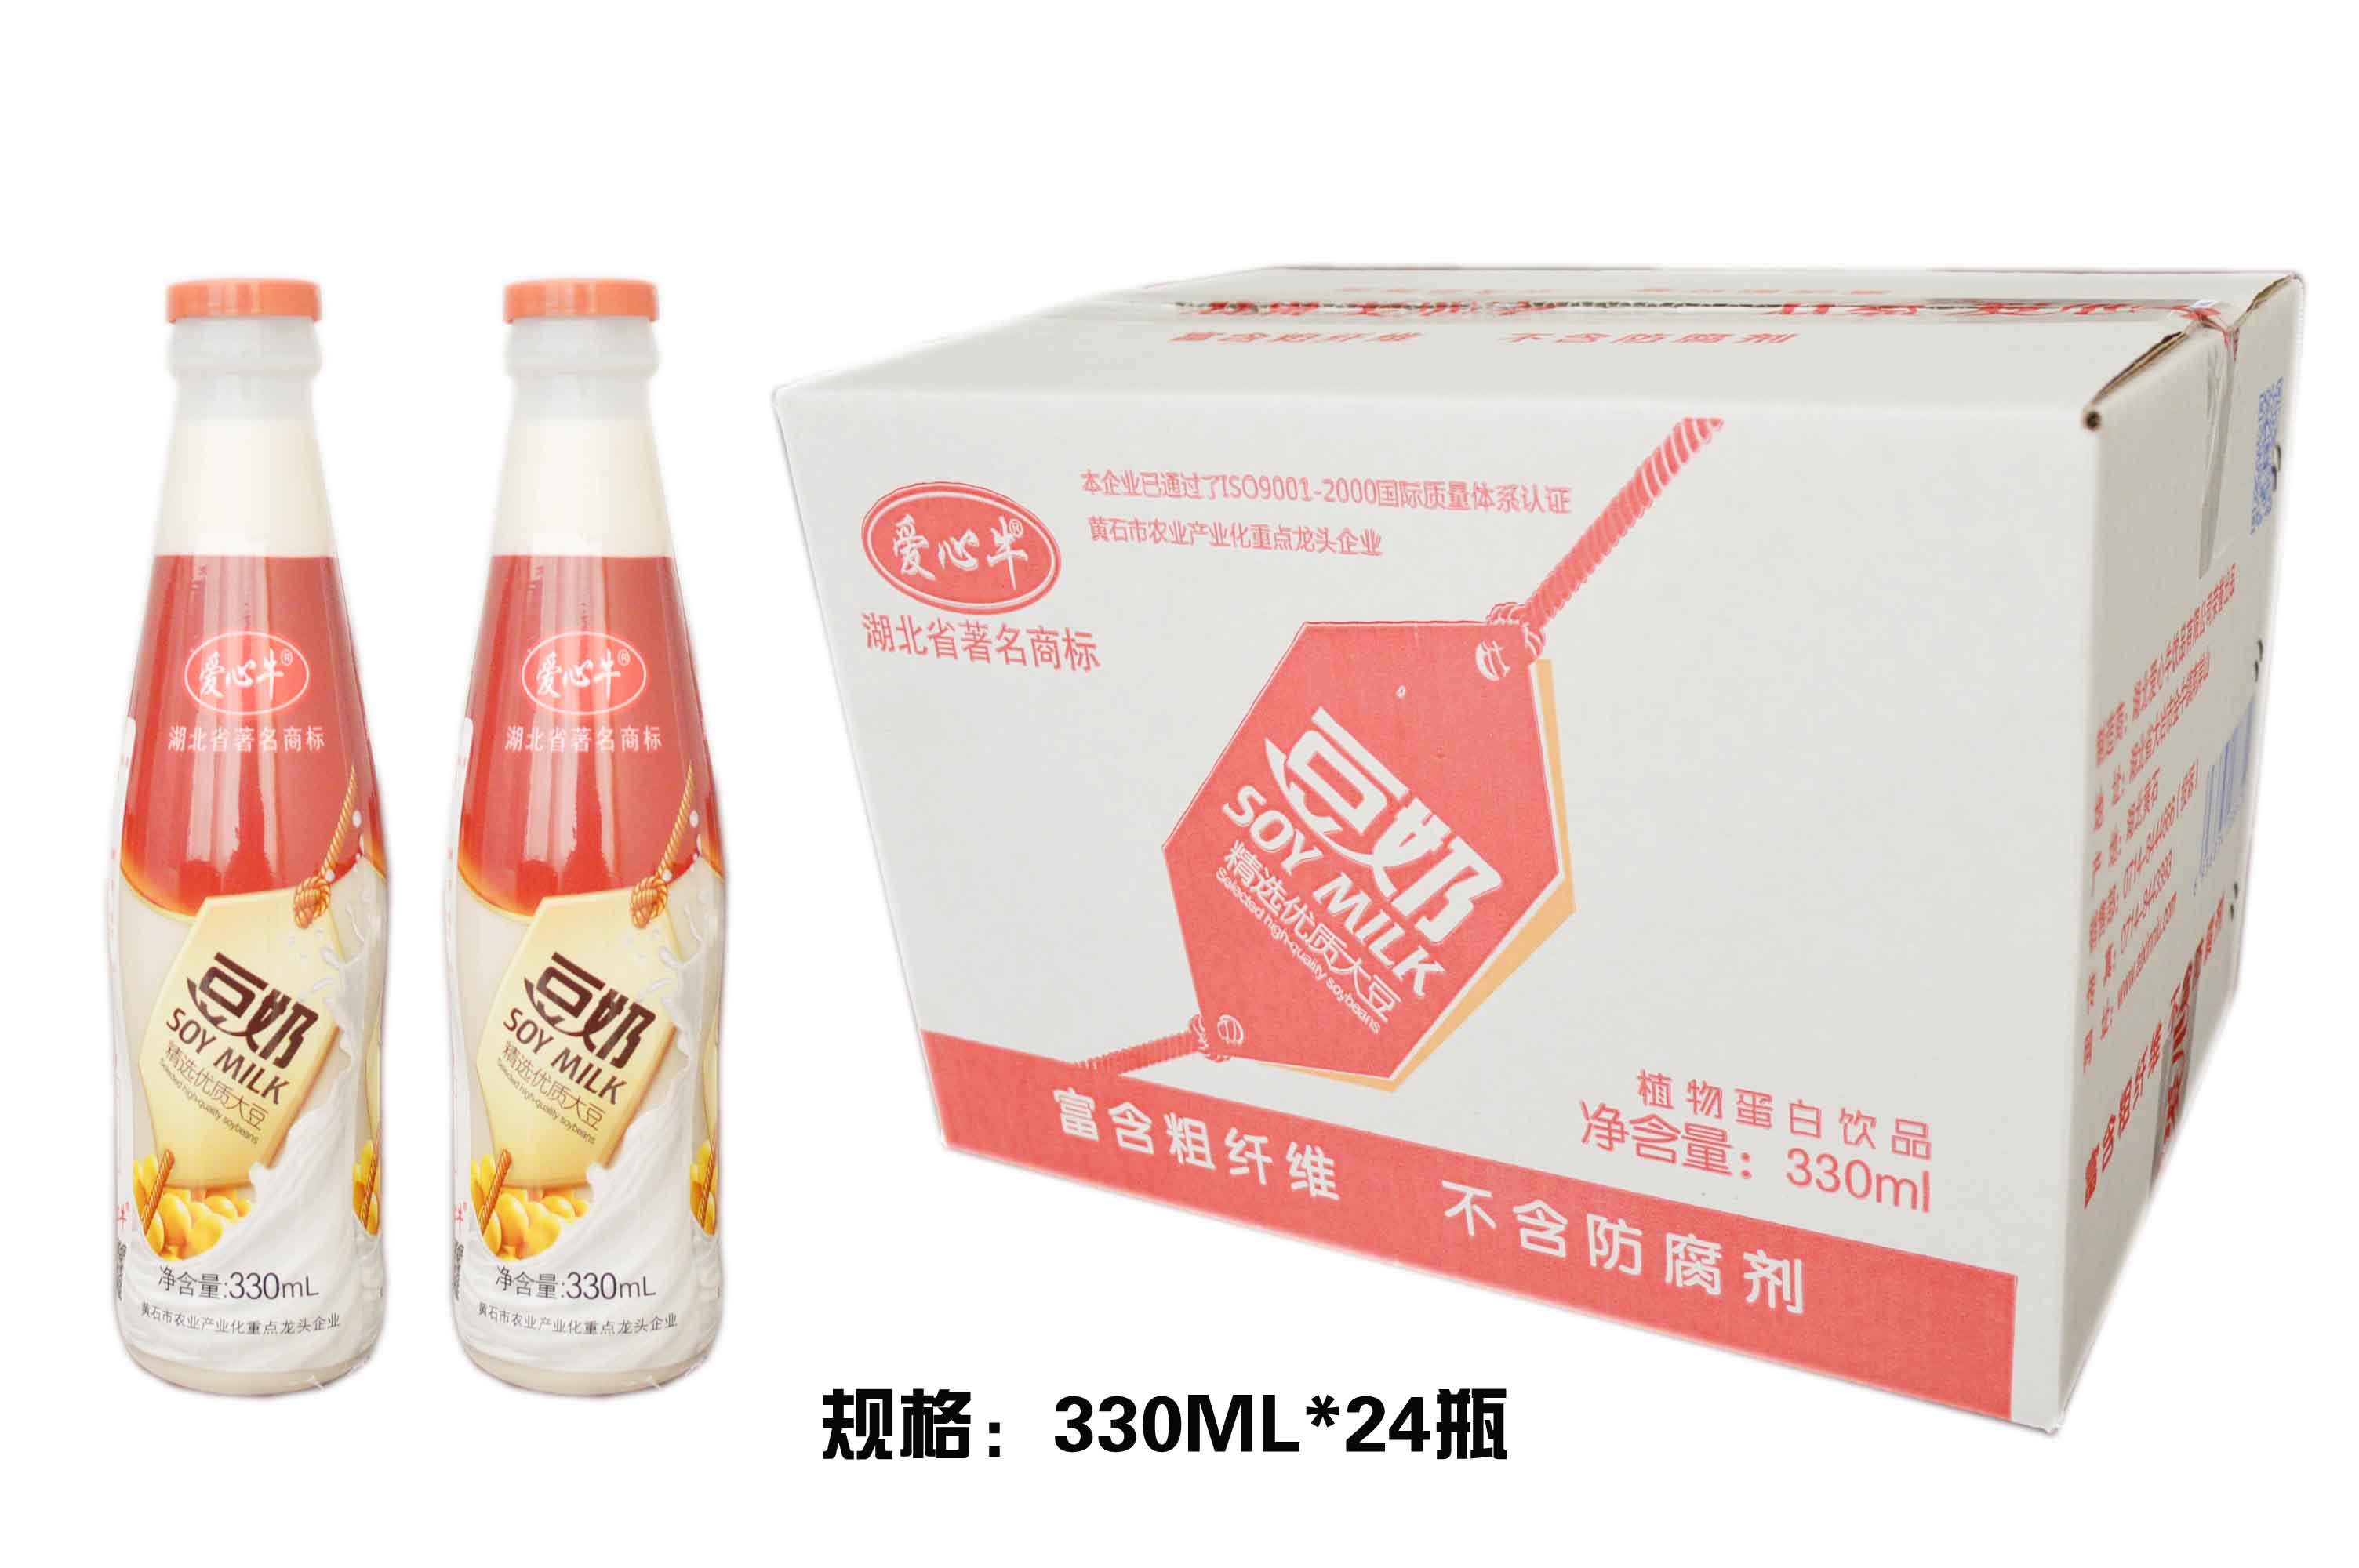 豆奶厂家 瓶装豆奶 规格330ML*24瓶